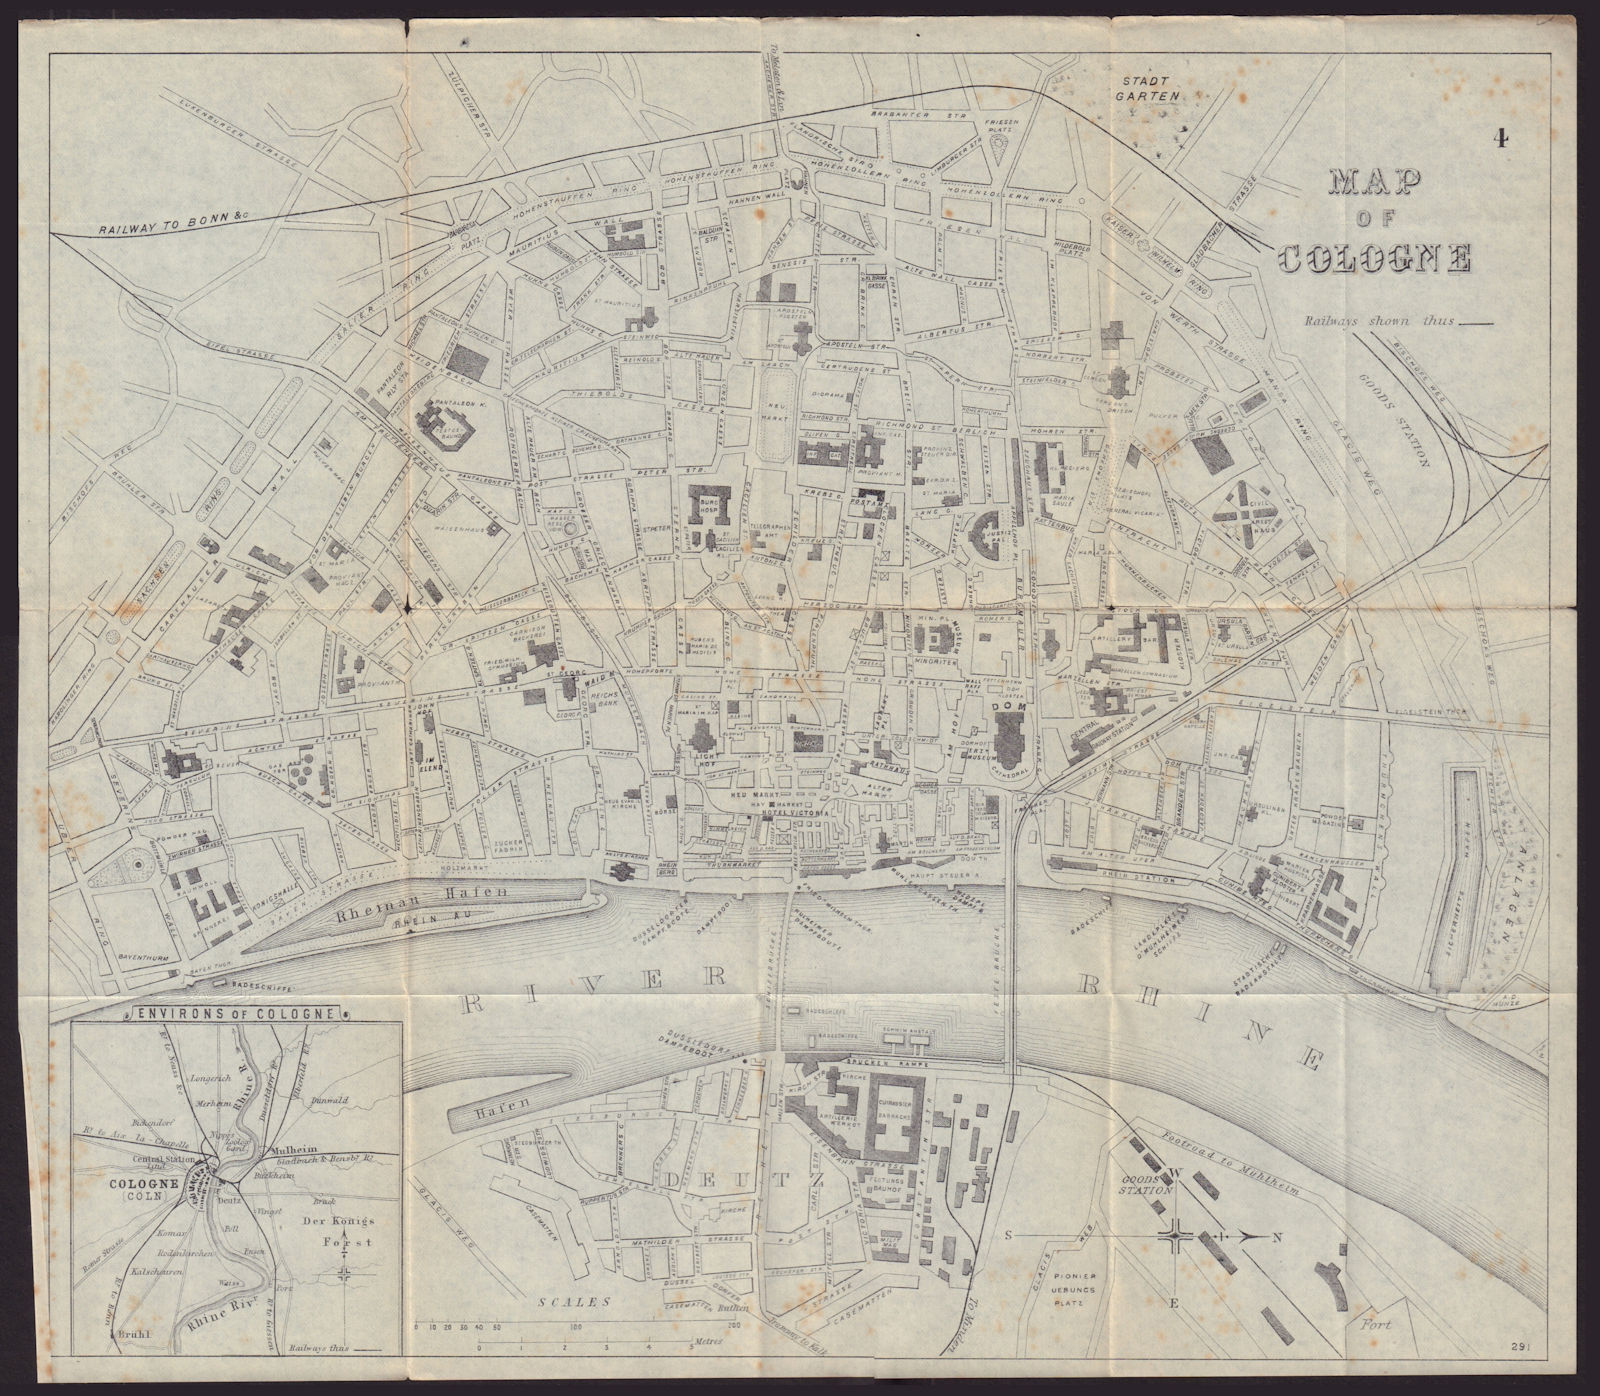 COLOGNE KOLN KÖLN antique town plan city map. Germany. BRADSHAW 1892 old